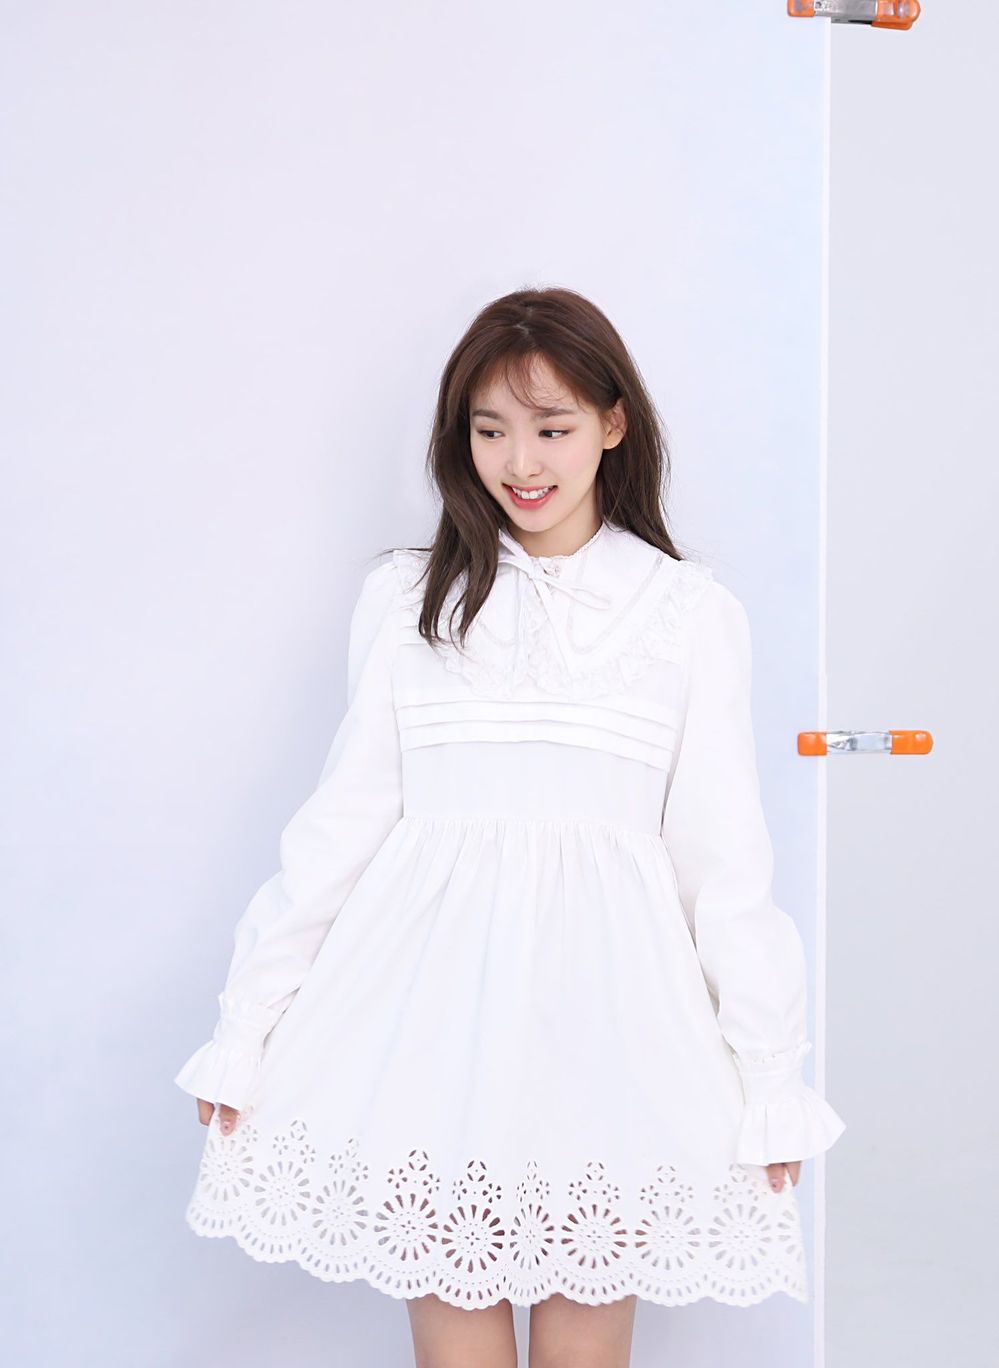  
Nayeon cực dễ thương trong chiếc váy babydoll màu trắng. (Ảnh: Pinterest)